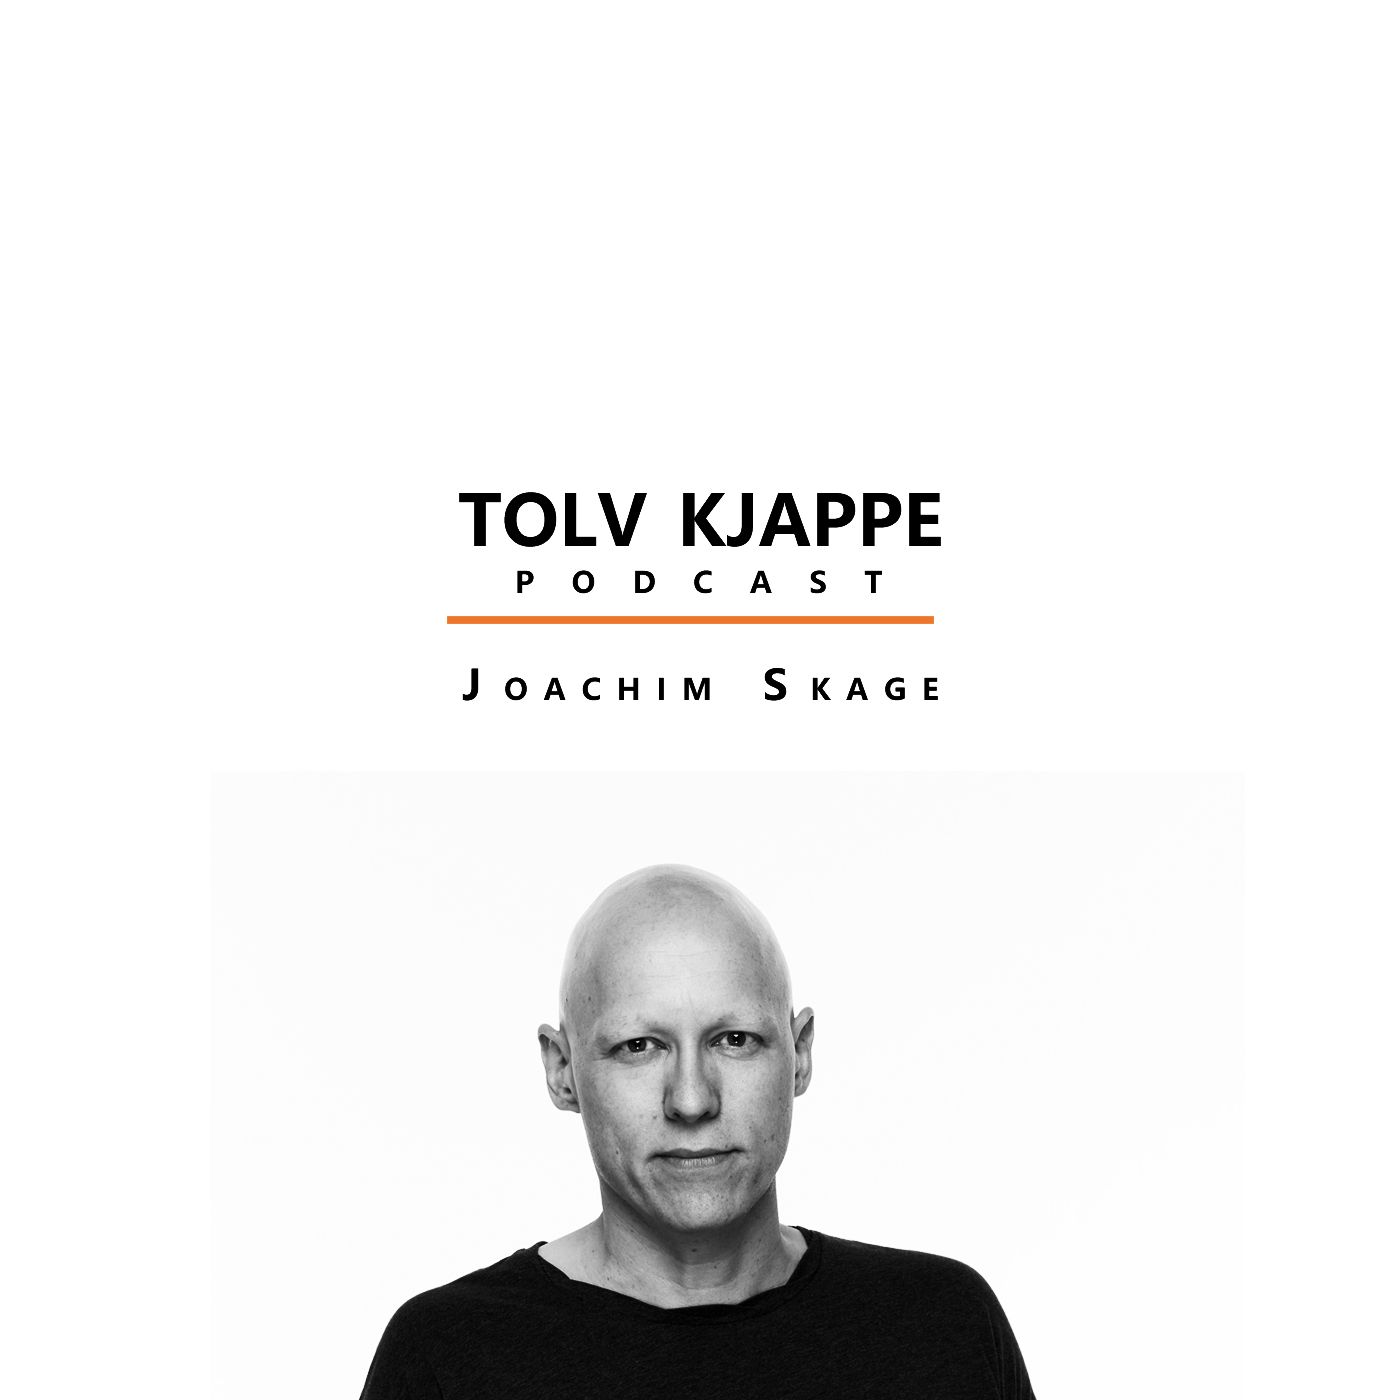 Tolv Kjappe Podcast